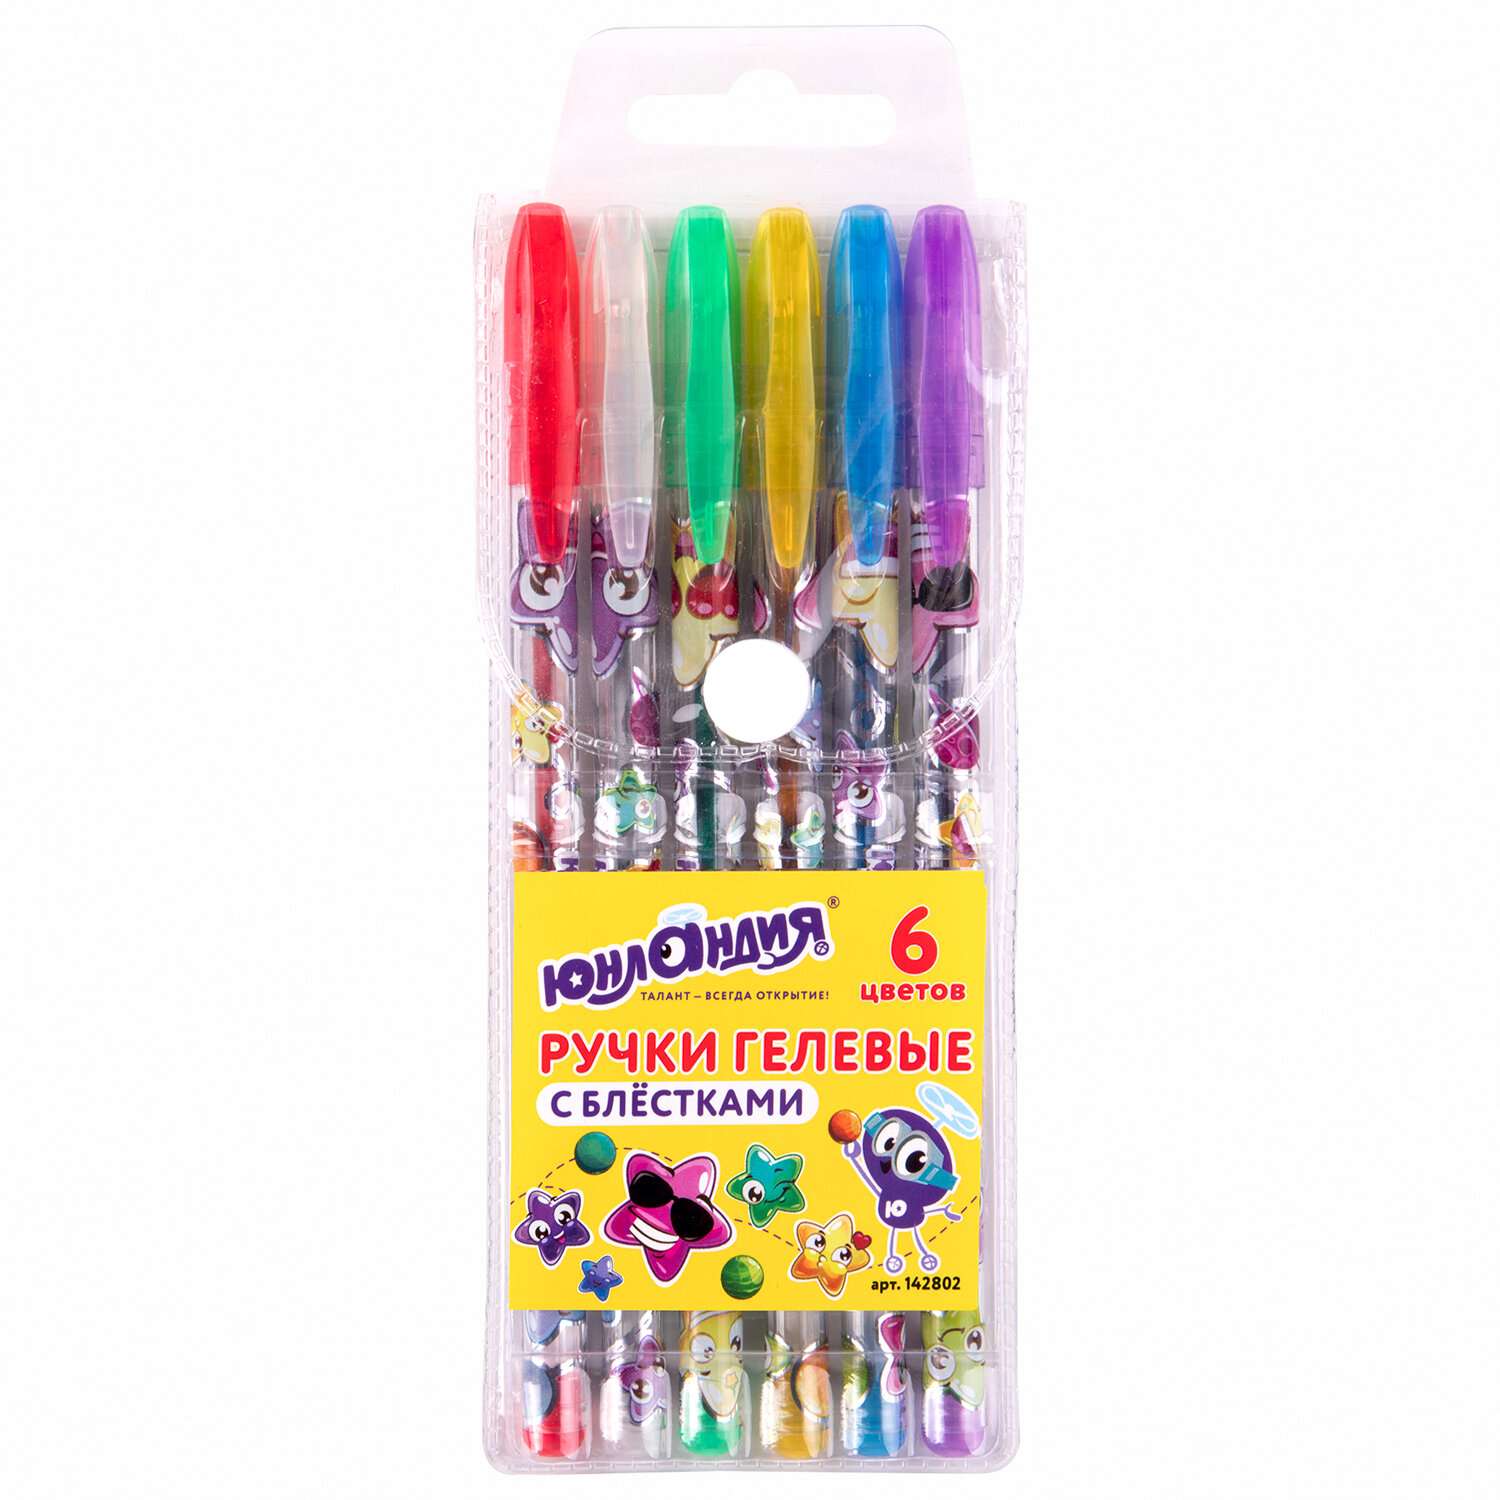 Ручки гелевые Юнландия цветные набор 6 штук для школы тонкие блестки - фото 1